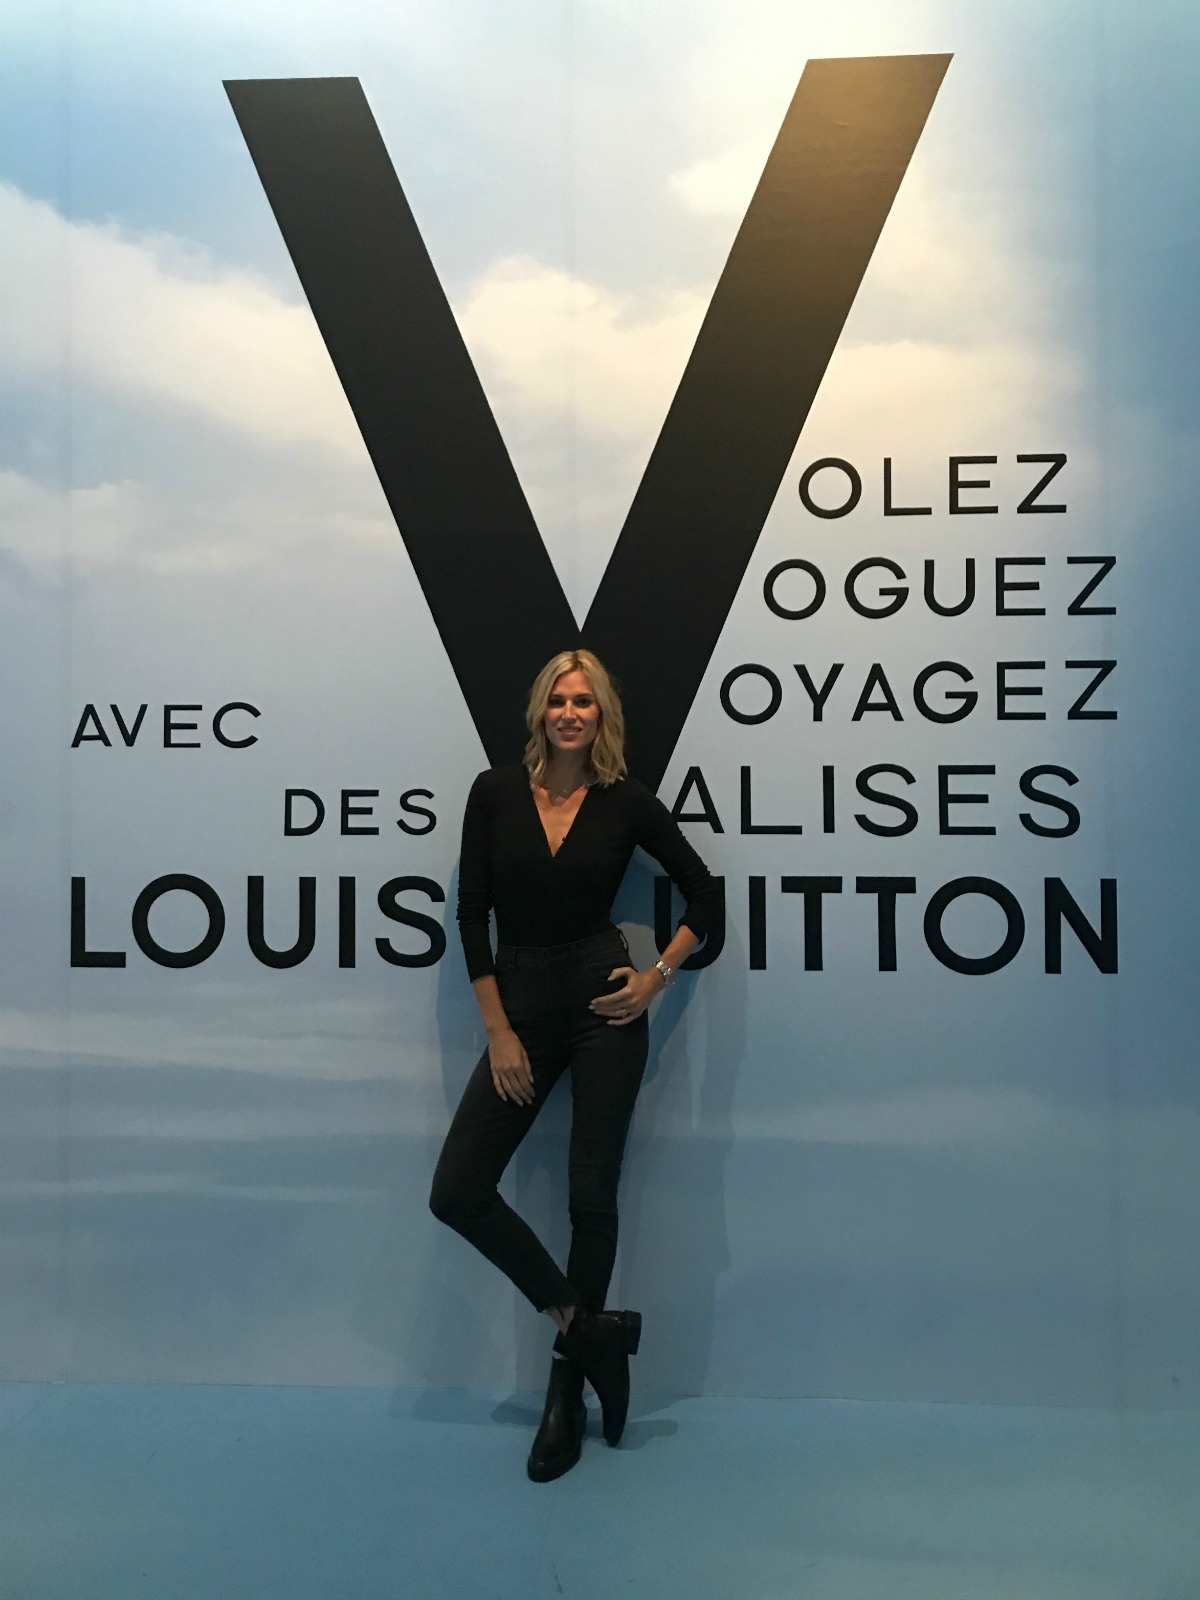 The Golden Ticket- Louis Vuitton Exhibit in New York City